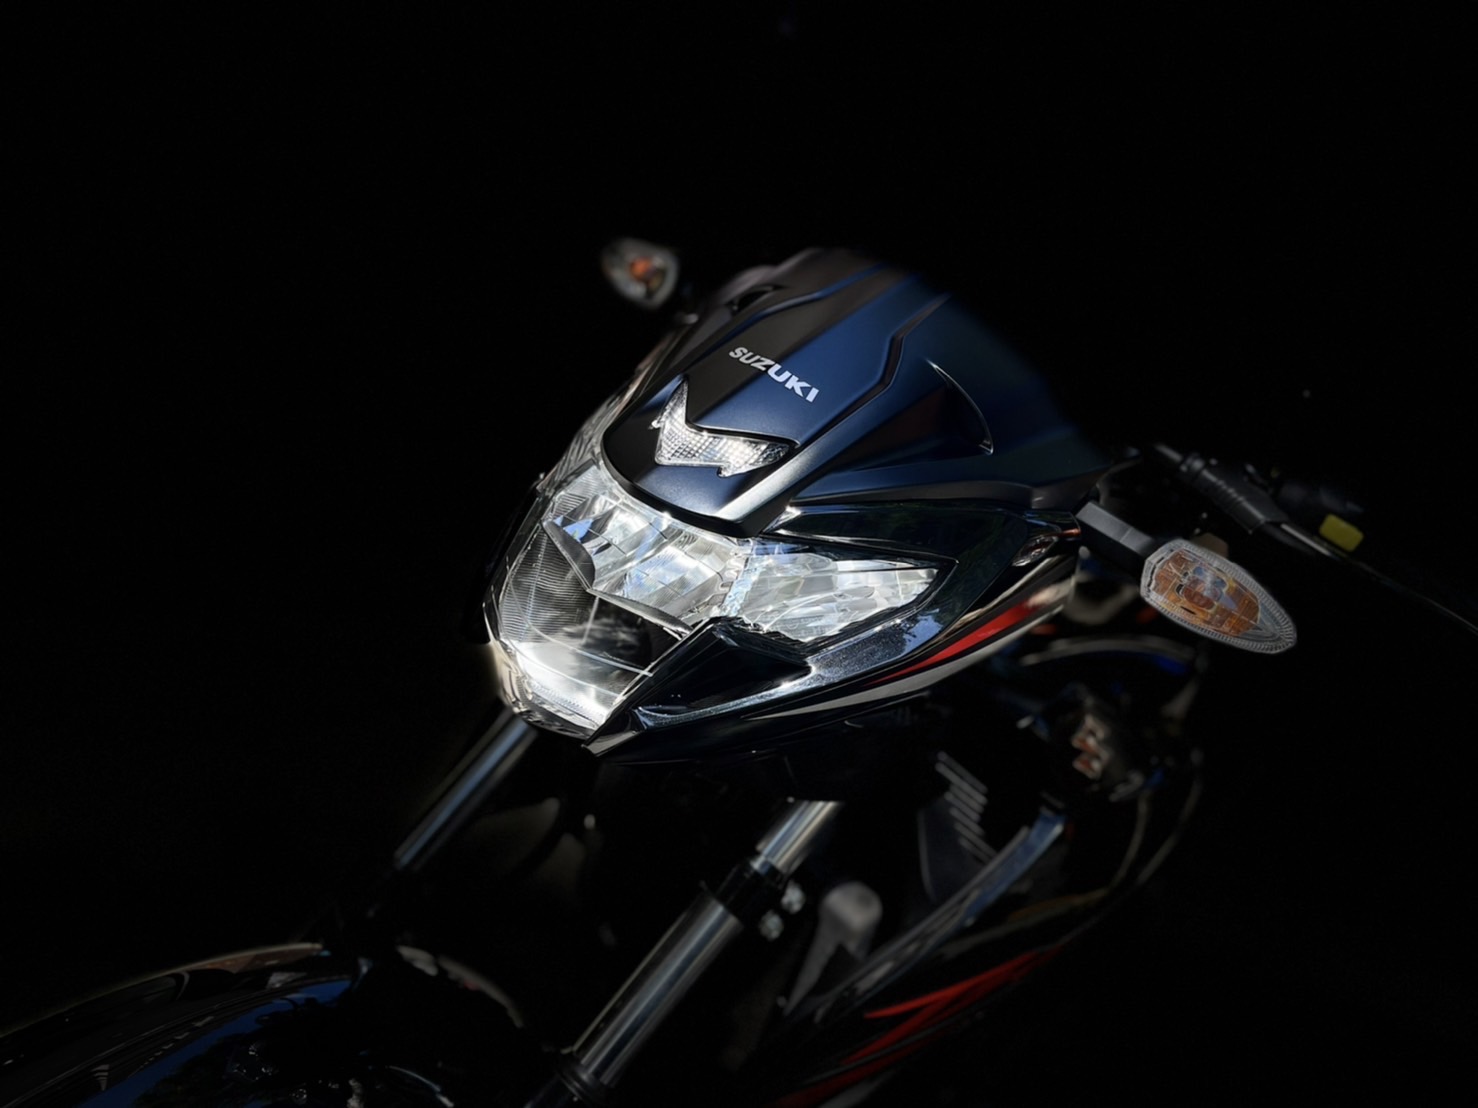 【小資族二手重機買賣】SUZUKI GSX150 Bandit - 「Webike-摩托車市」 原汁原味 無摔 無重大事故 小資族二手重機買賣